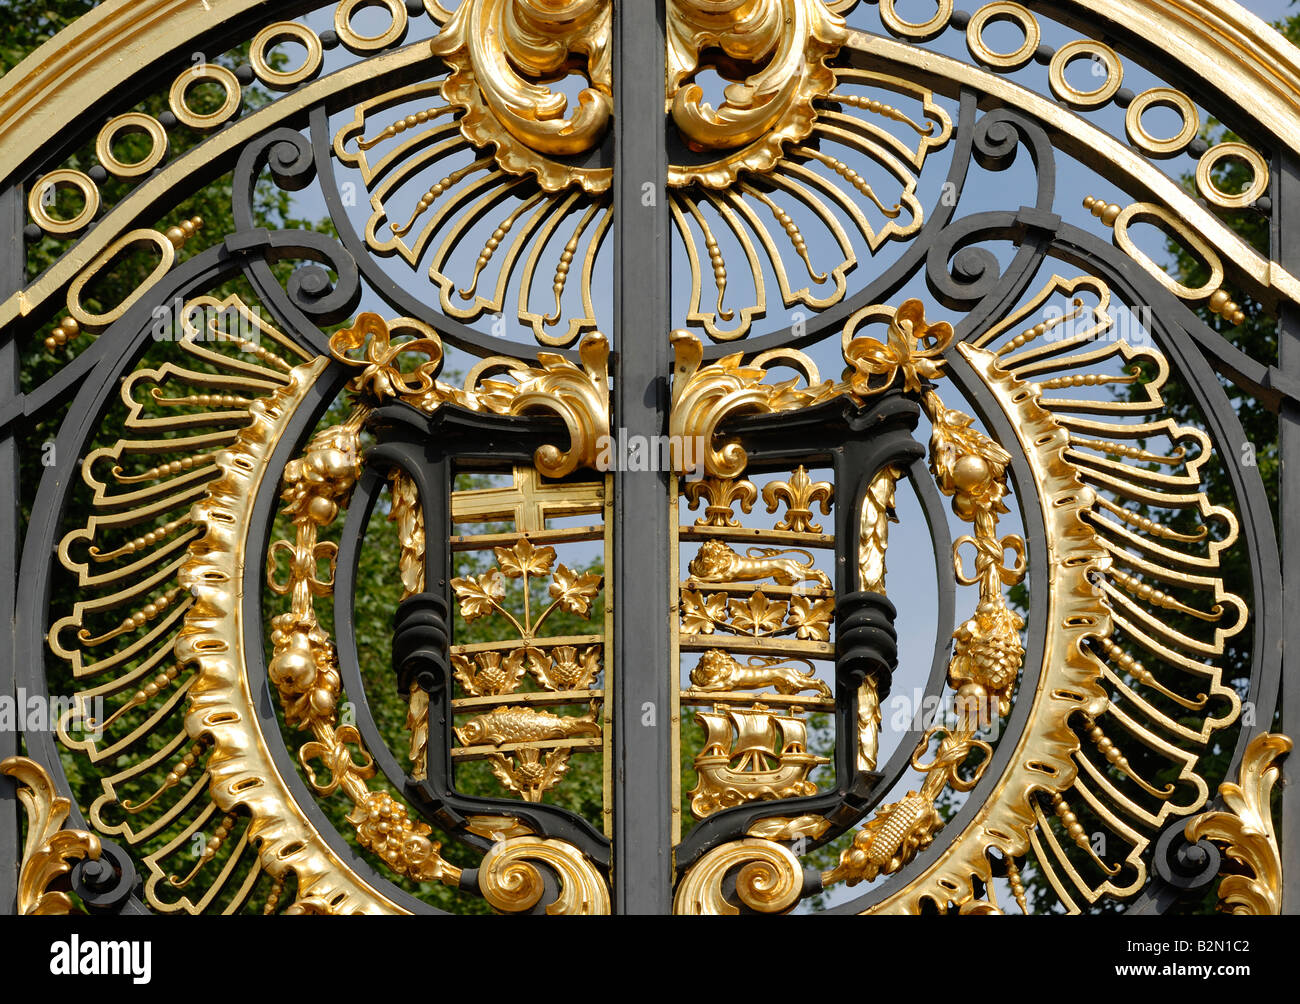 Détail de portes pour les jardins de Buckingham Palace, Londres Banque D'Images